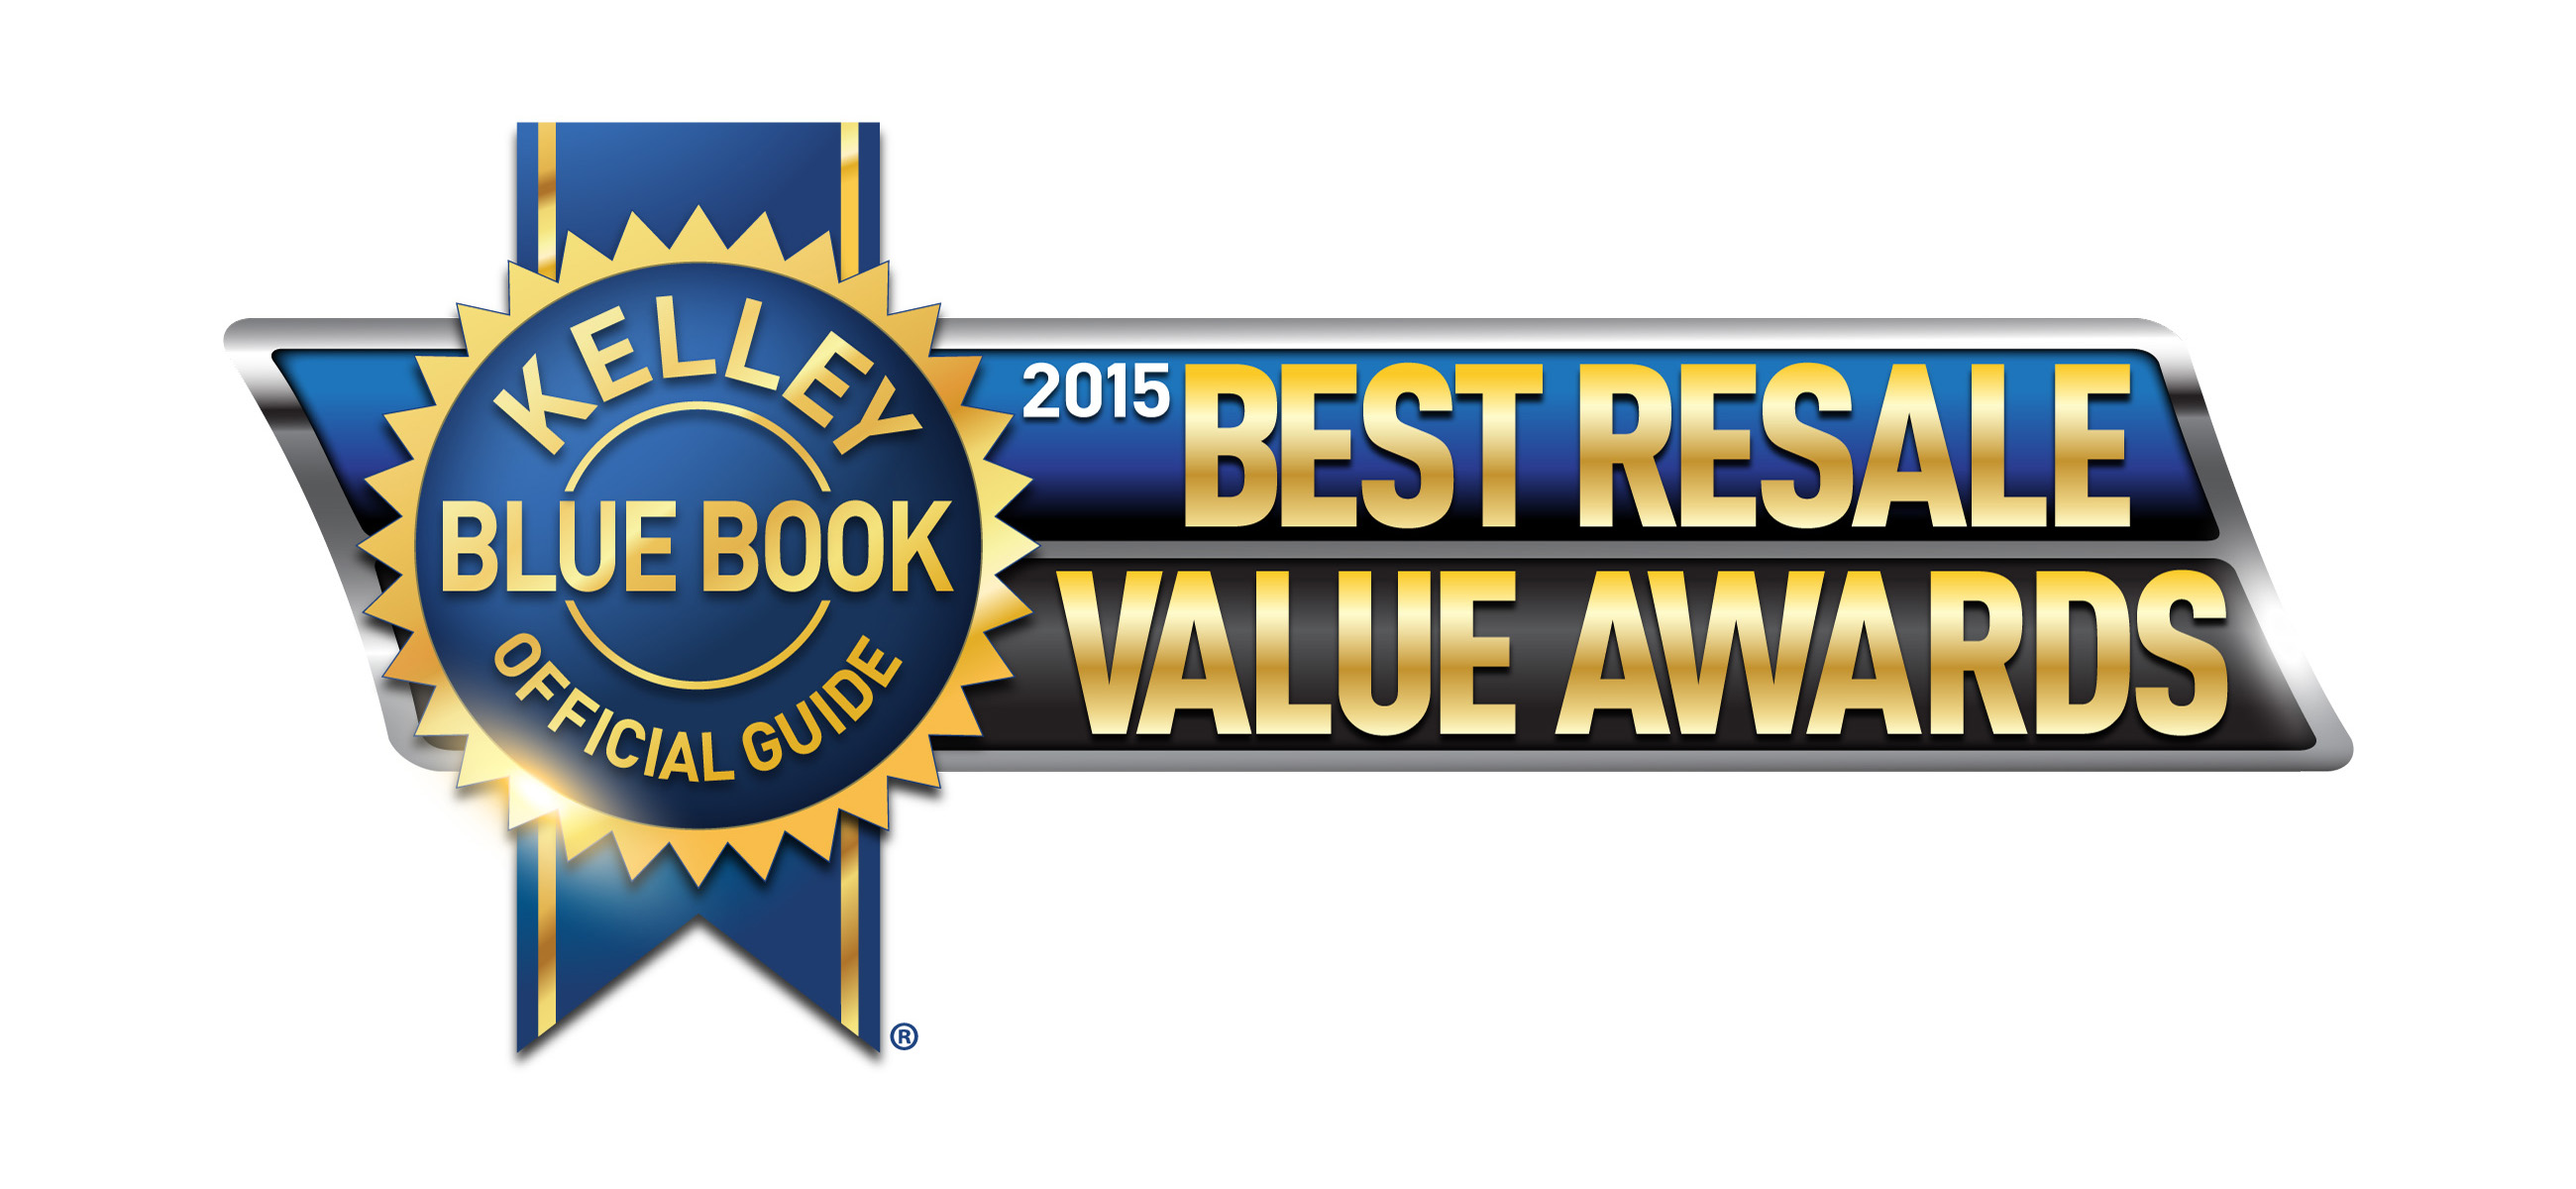 2015 Best Resale Value Award Winners Announced By Kelley